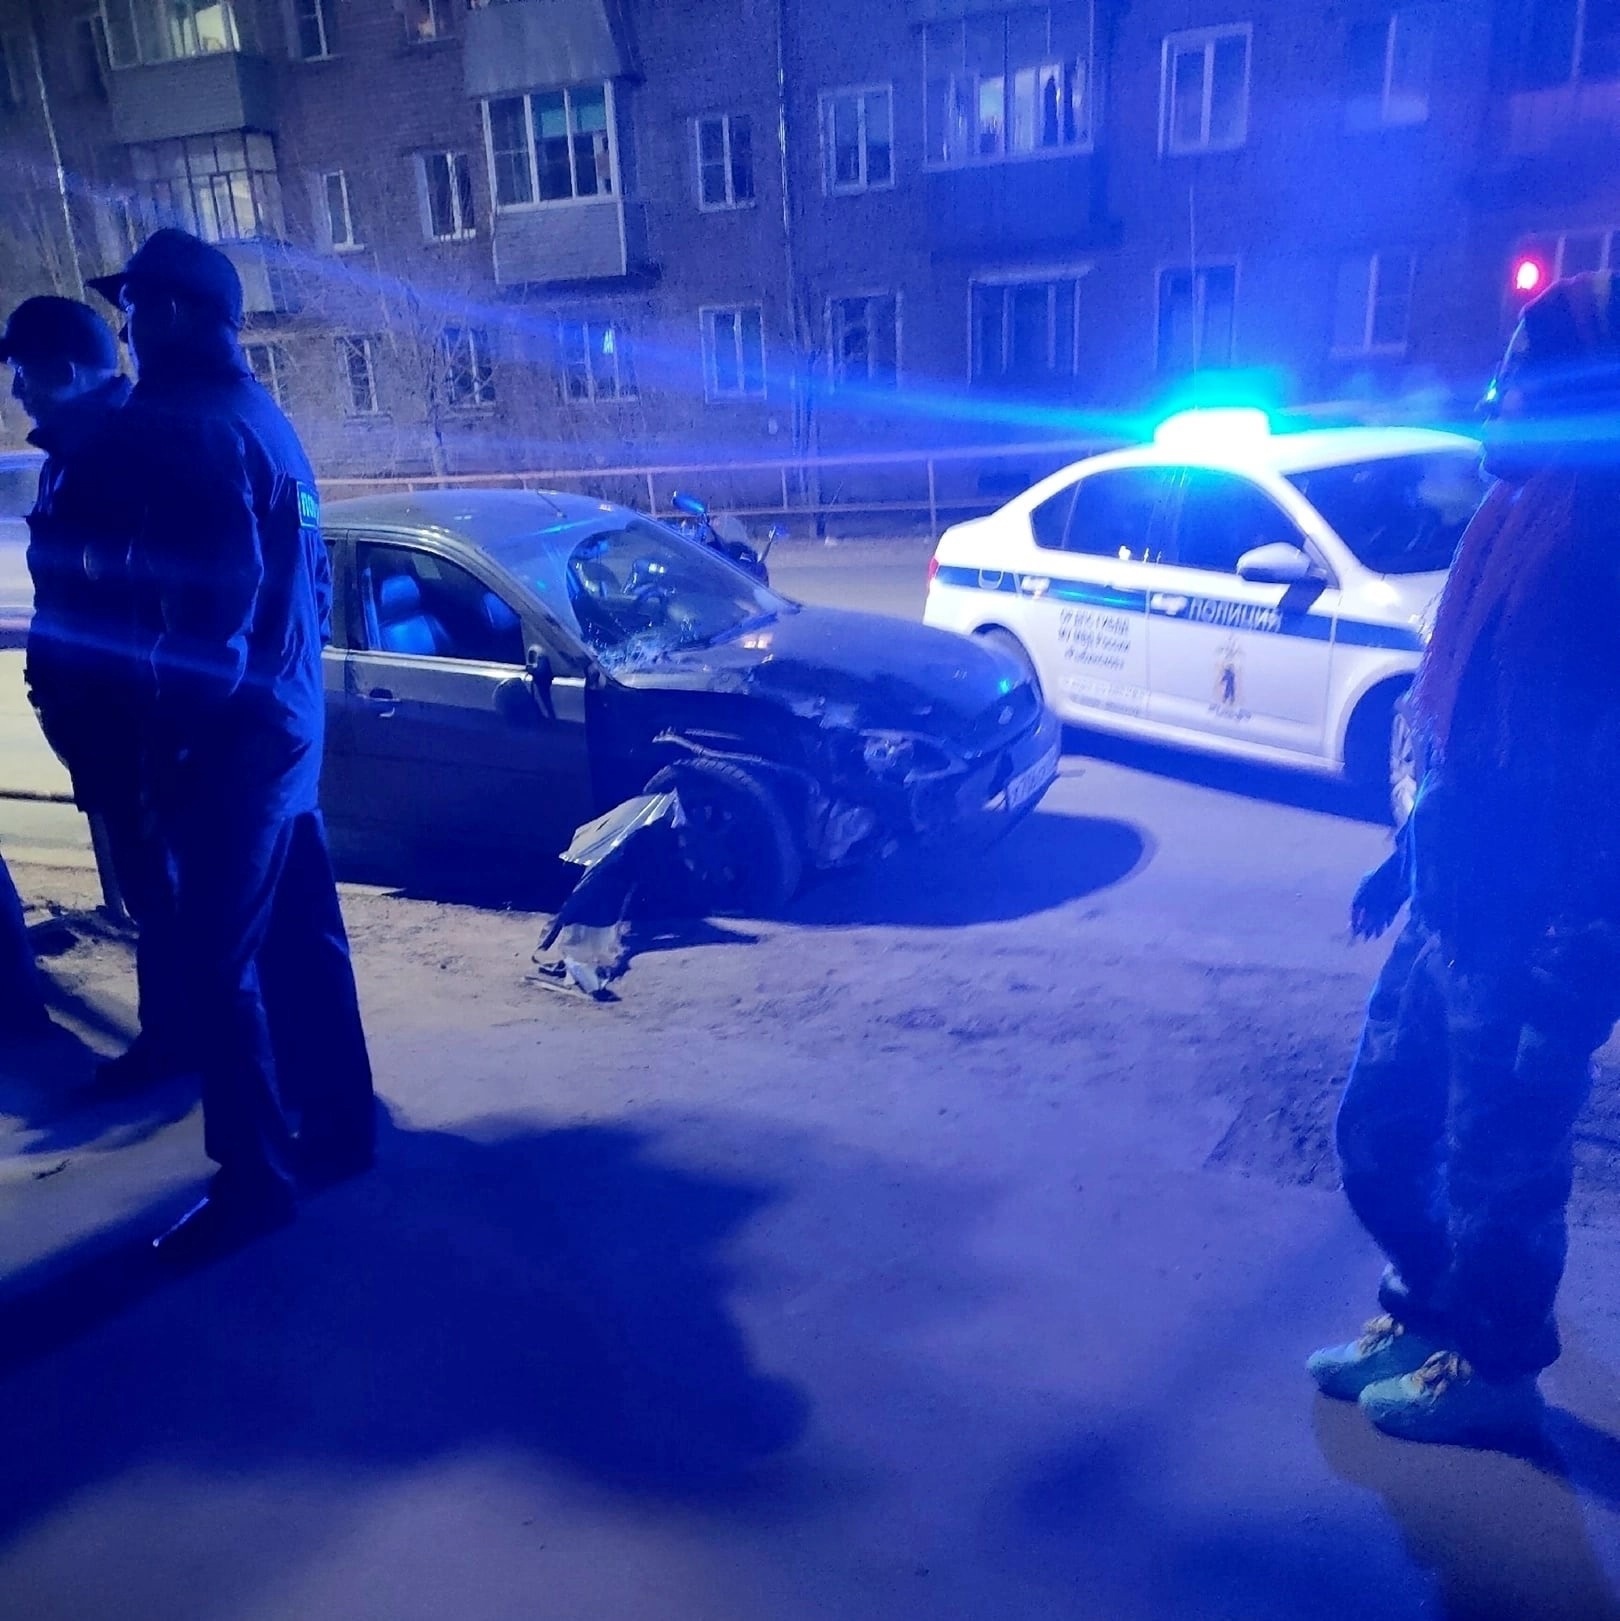 Нов 23 апреля. Машина на тротуаре. В Рыбинске сбили двух детей. Пацан возле машины.